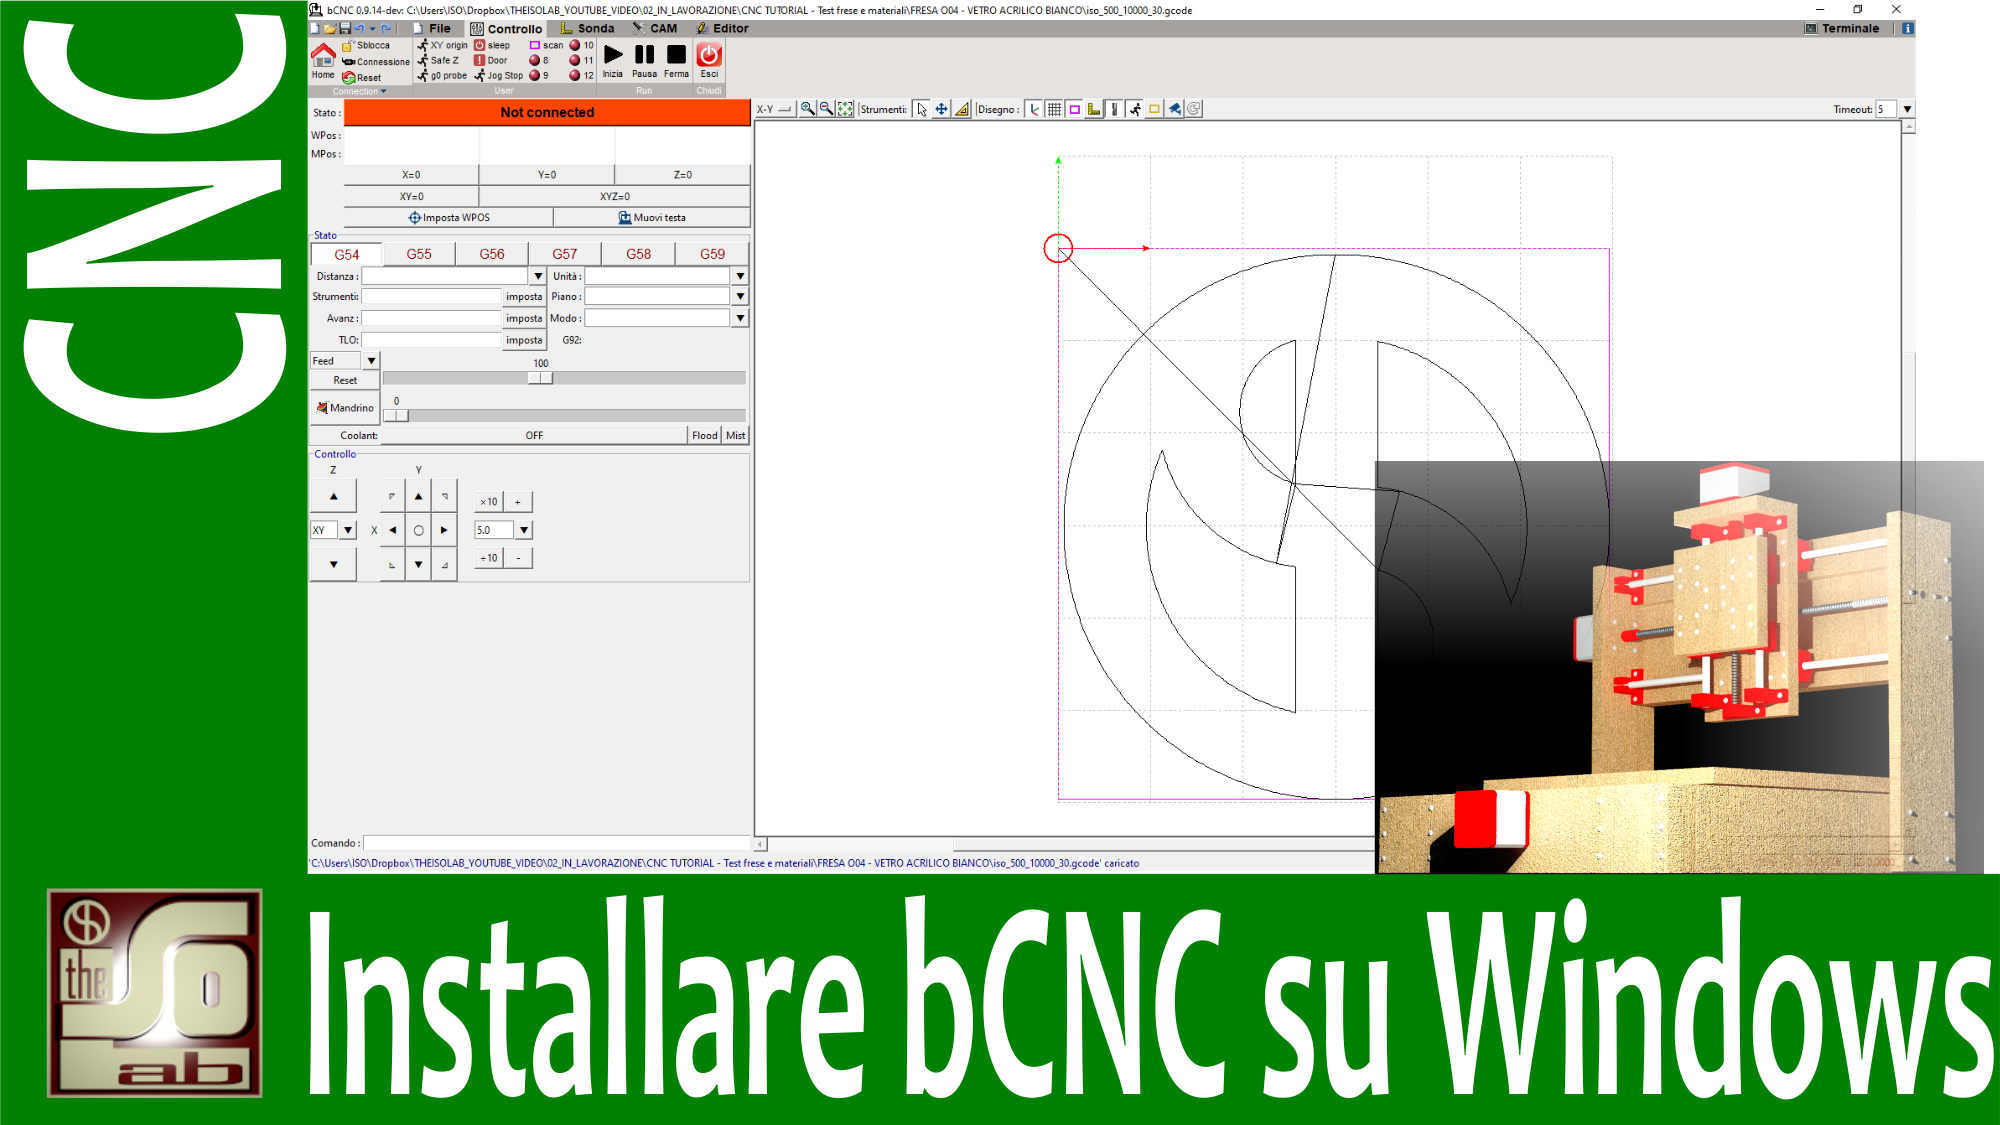 CNC Tutorial - Come installare bCNC su Windows